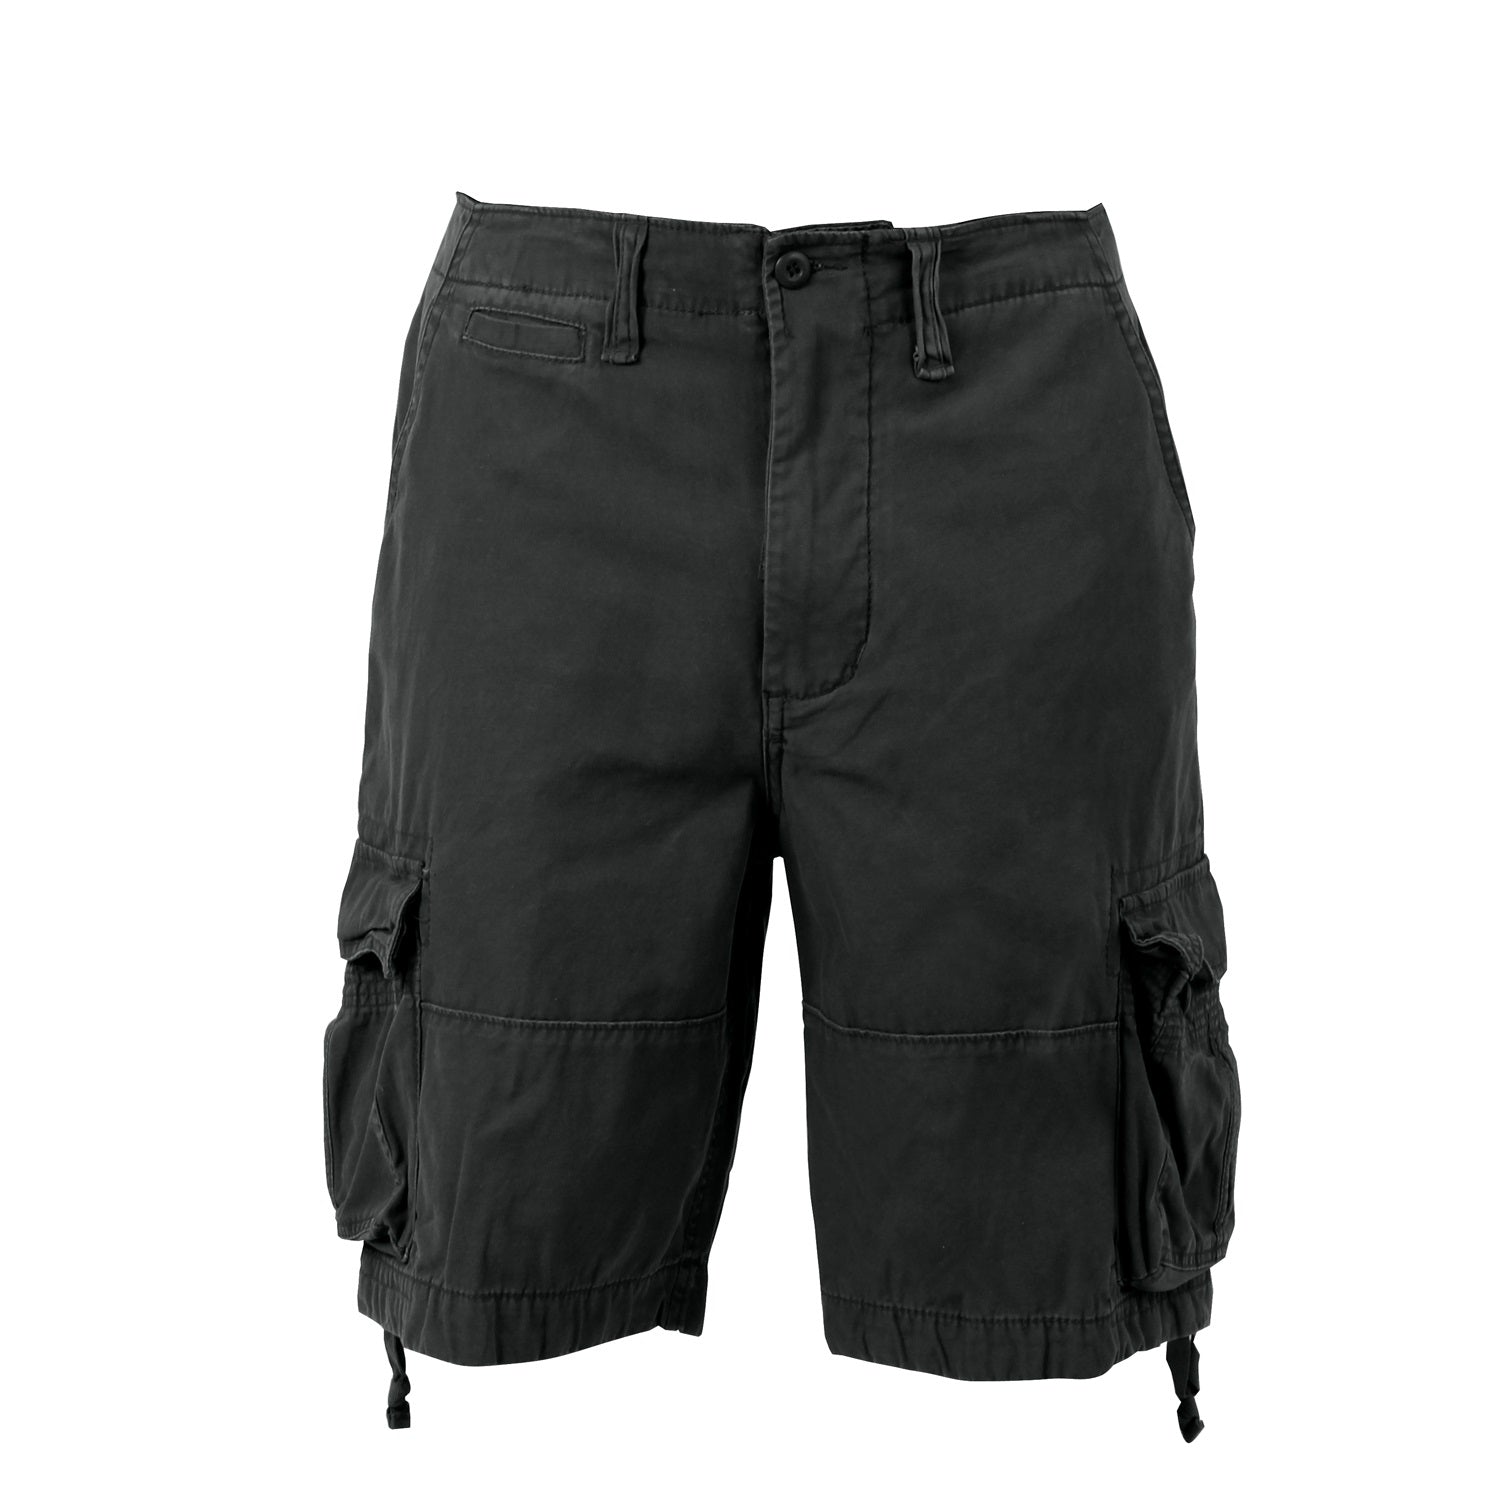 Rothco Vintage Infantry Utility Shorts - Black